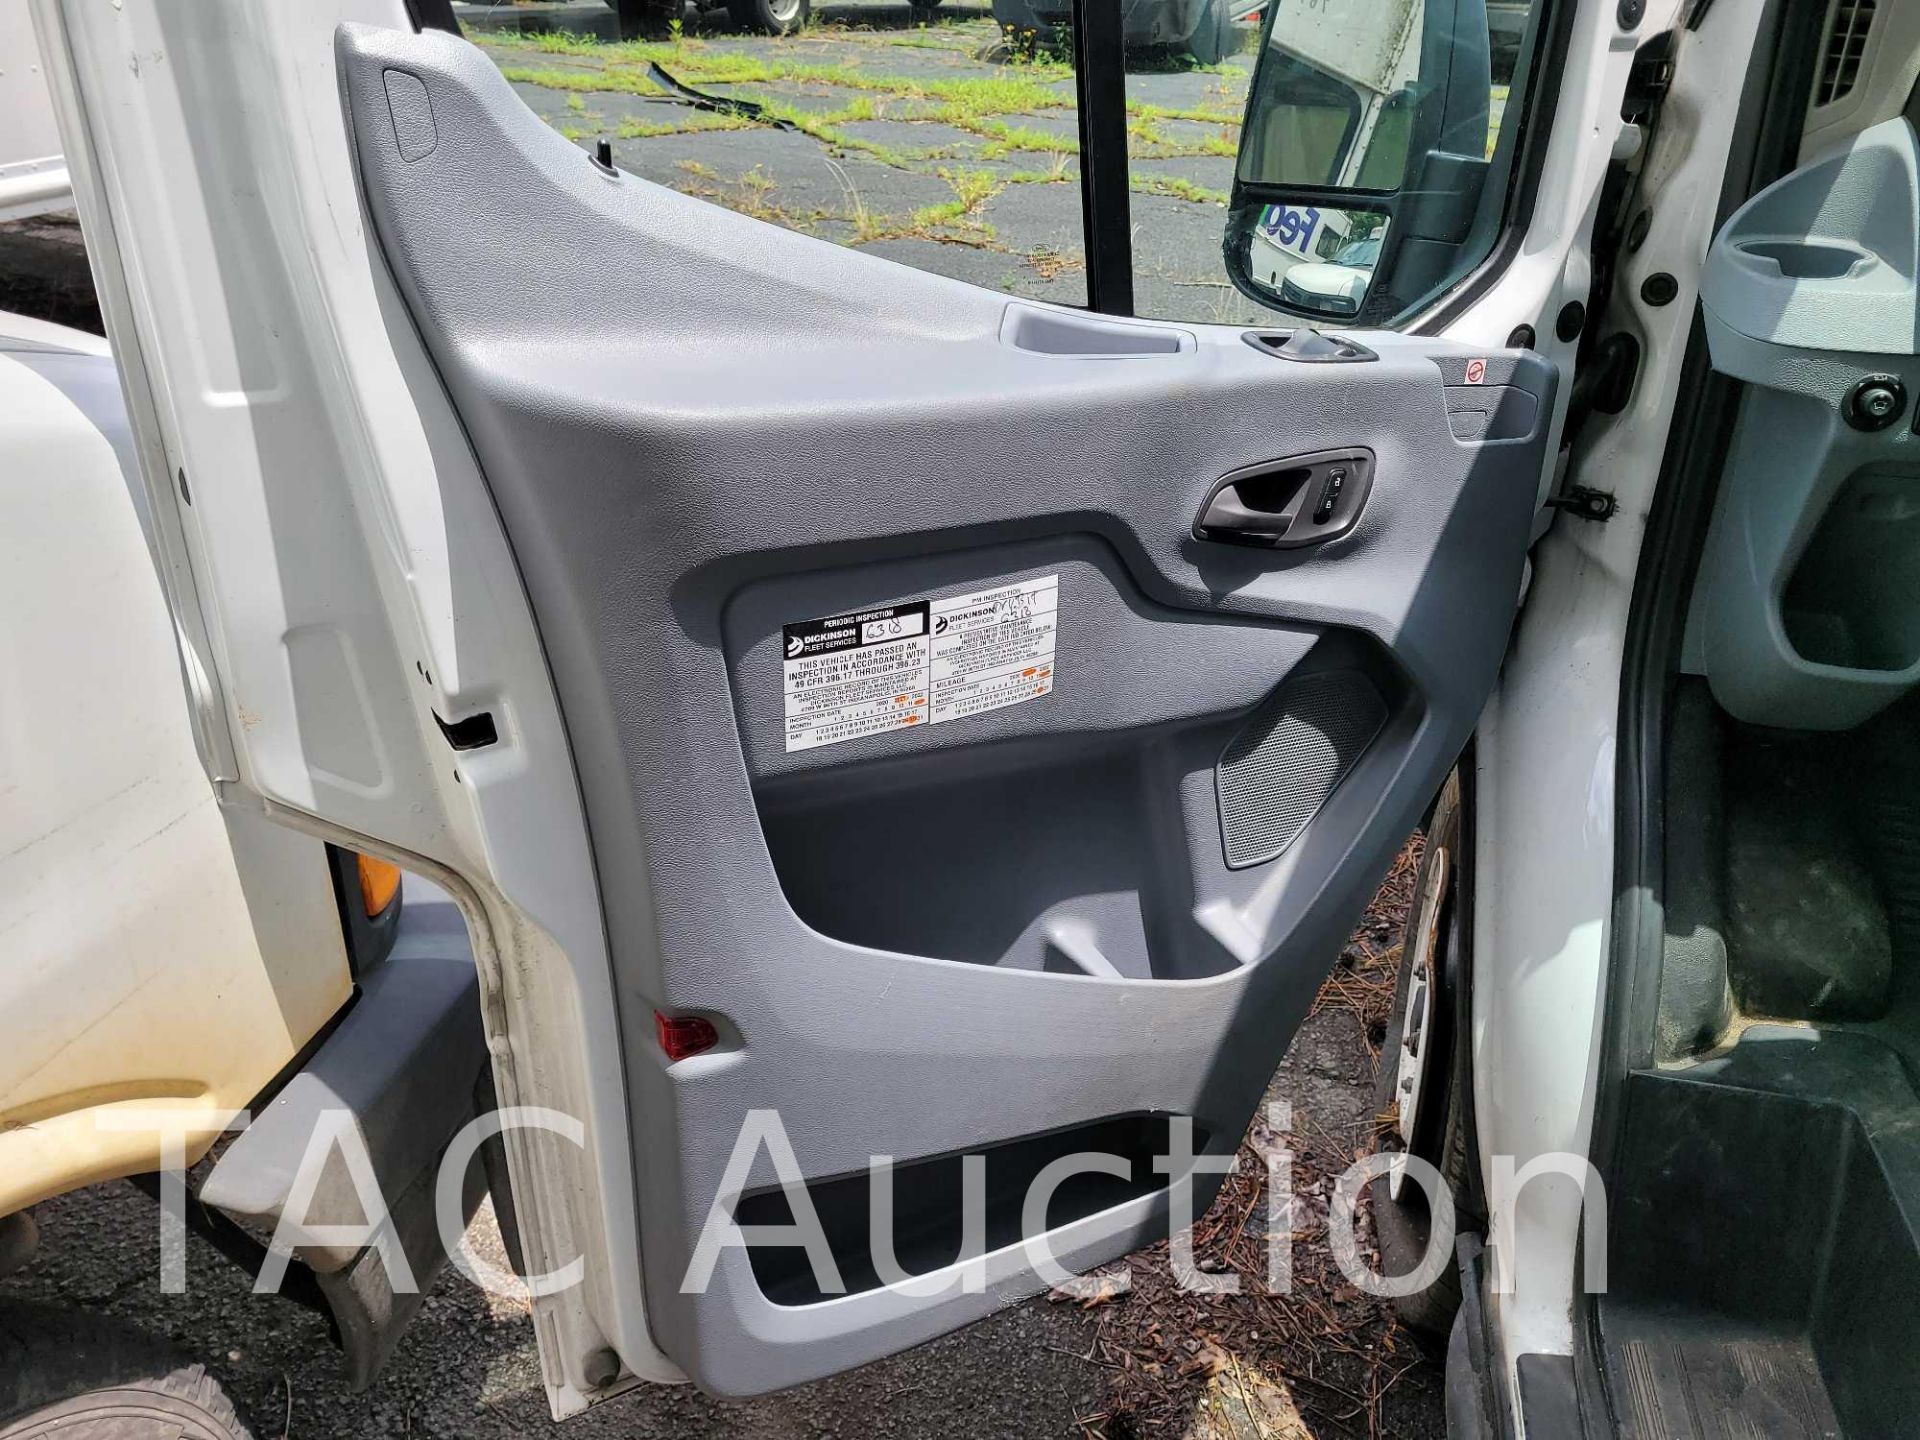 2019 Ford Transit 150 Cargo Van - Image 13 of 50